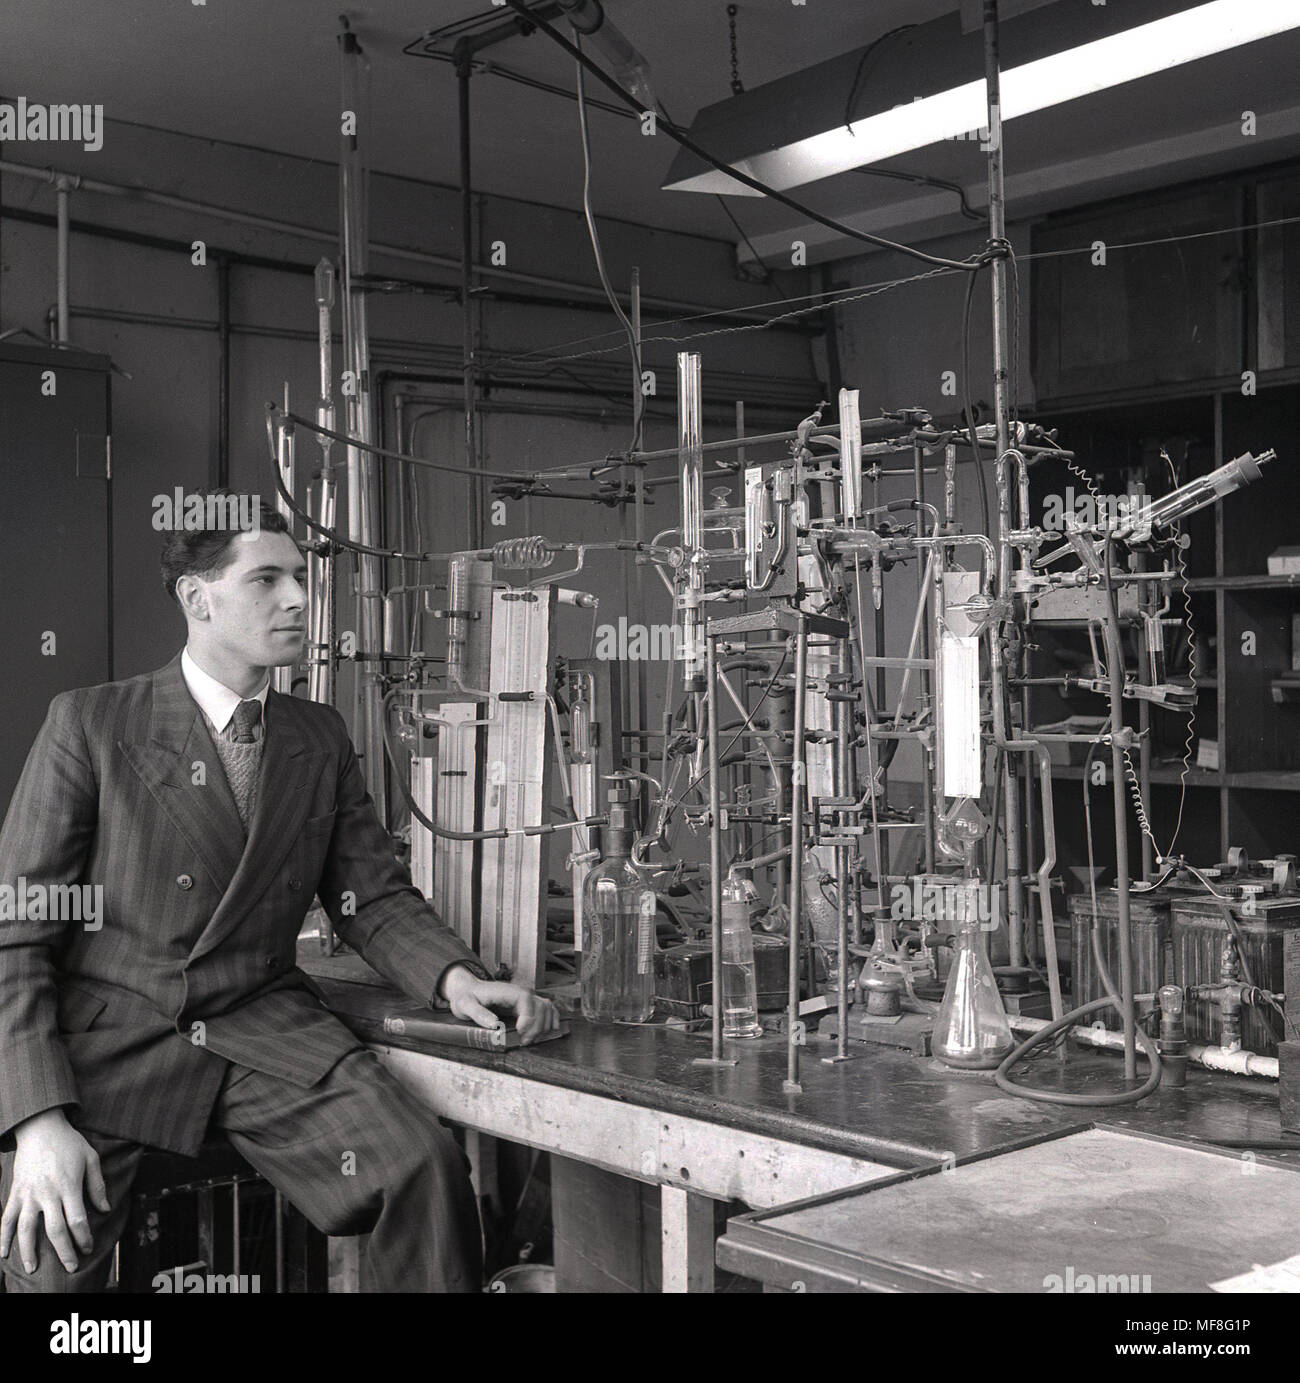 1948, historiques, jeune homme chercheur scientifique portant un costume pin-stripe assis à côté du dispositif élaboré de tuyaux, tubes et bouteilles en verre construit pour ses recherches sur les propriétés chimiques du charbon et du monoxyde de carbone dans un laboratoire dans le Dept de charbon, gaz, Fuel Industries et à l'Université de Leeds. Banque D'Images